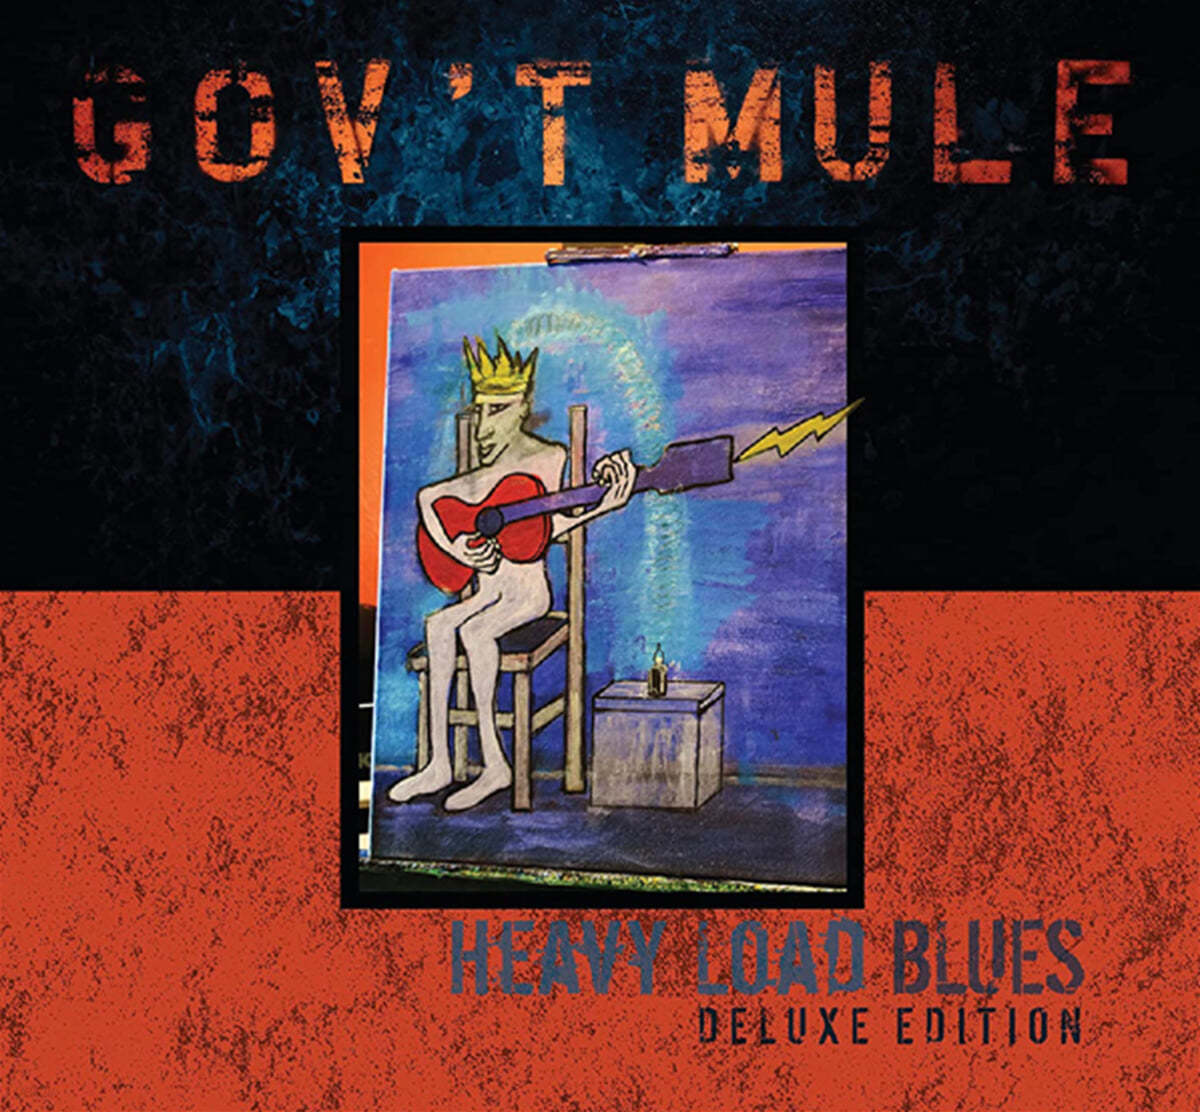 Gov&#39;t Mule (곱트 뮬) - Heavy Load Blues 